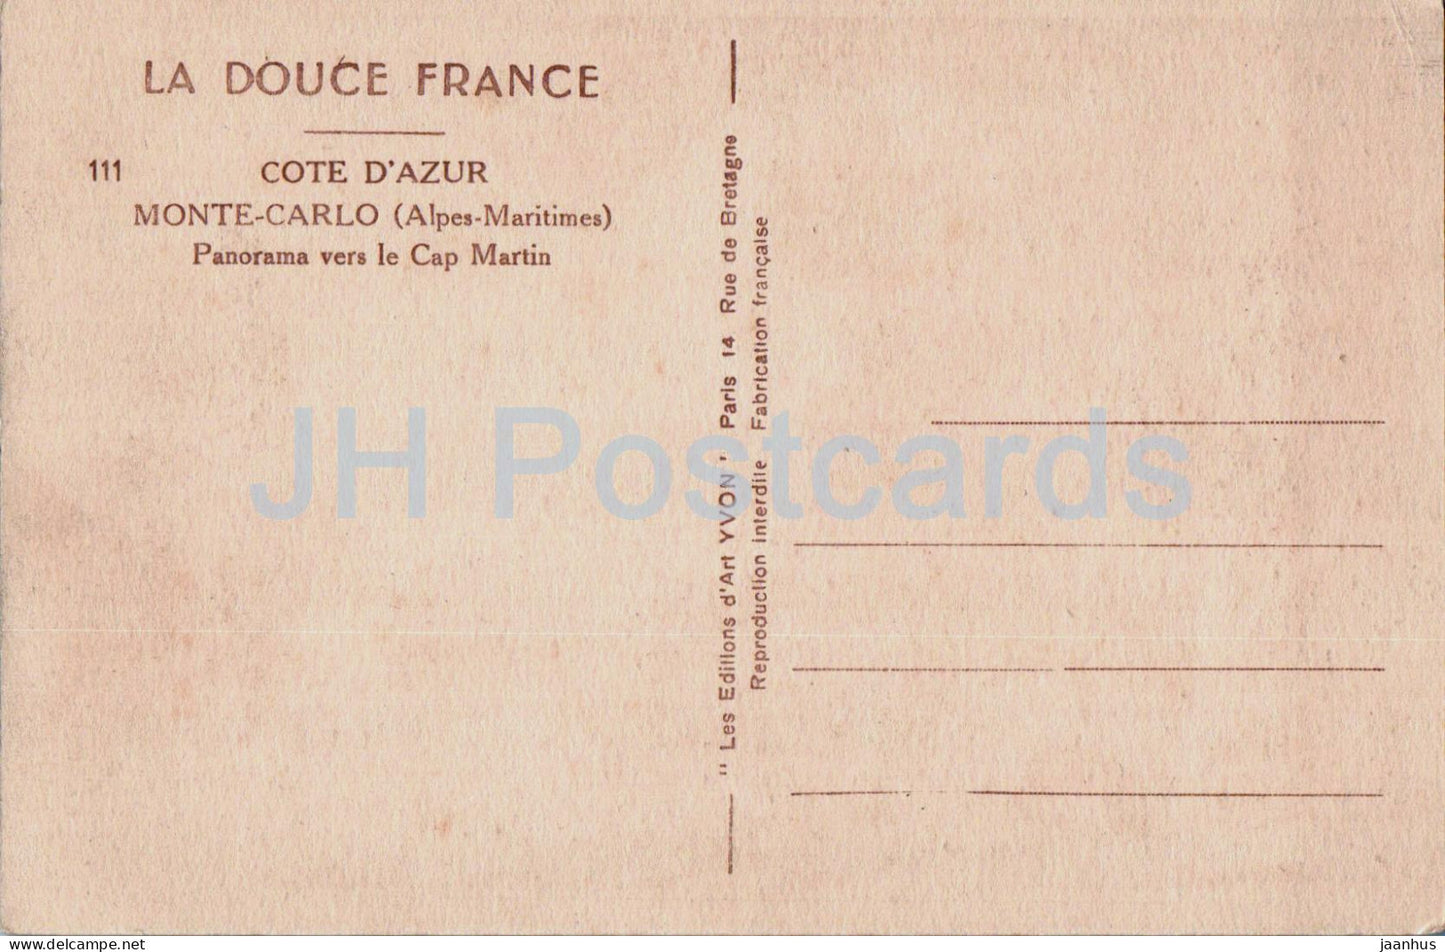 Monte Carlo - Panorama vers le Cap Martin - Côte d'Azur - La Douce France - 111 - carte postale ancienne - Monaco - inutilisée 